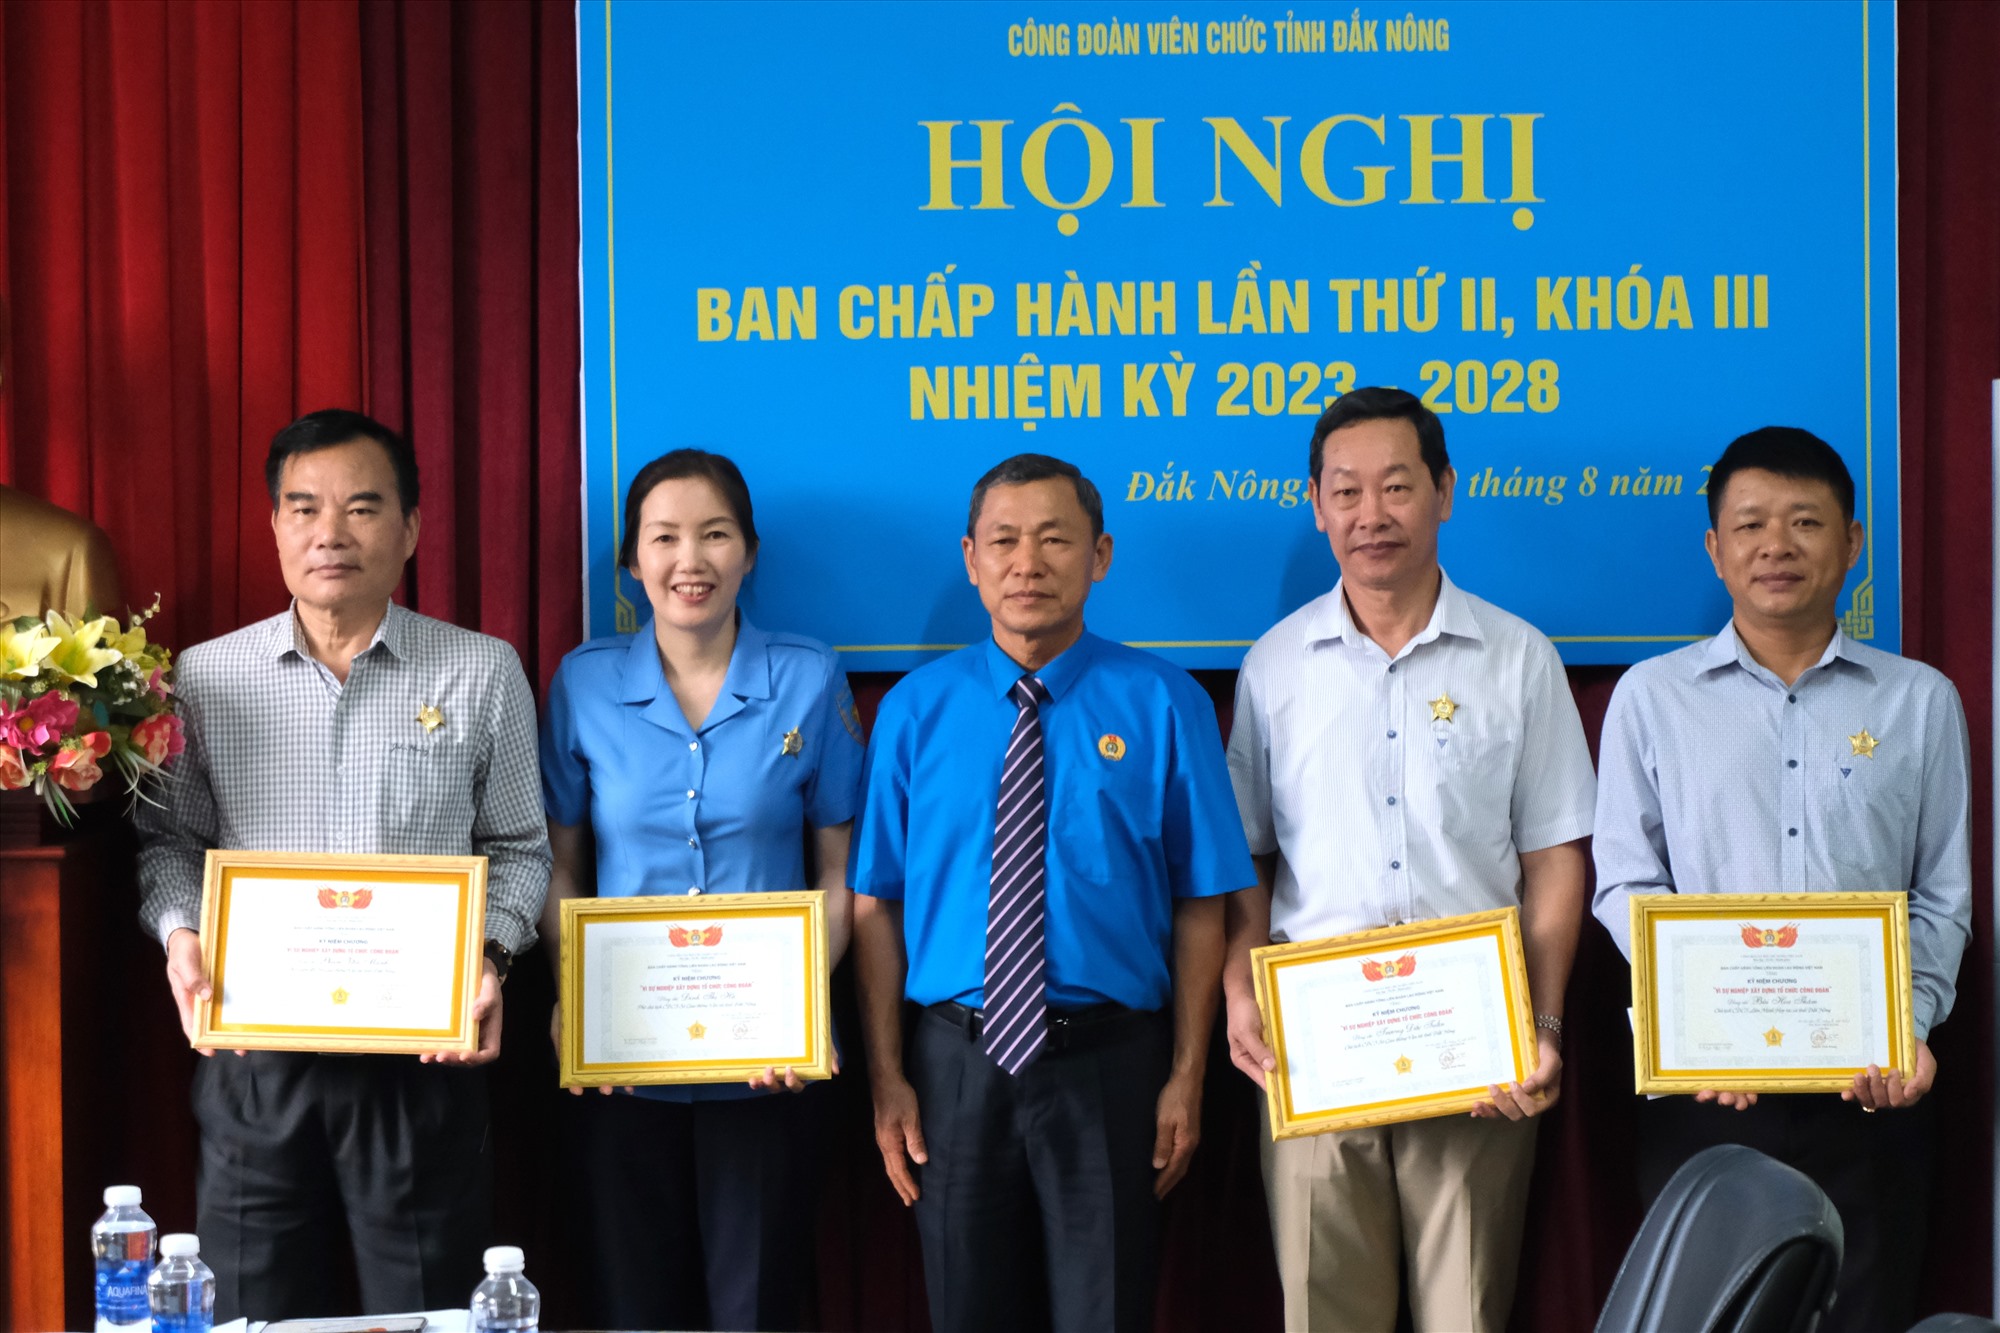 Liên đoàn Lao động Đắk Nông vinh danh 4 cá nhân vì sự nghiệp pbhat1 triển Công đoàn. Ảnh: Phan Tuấn